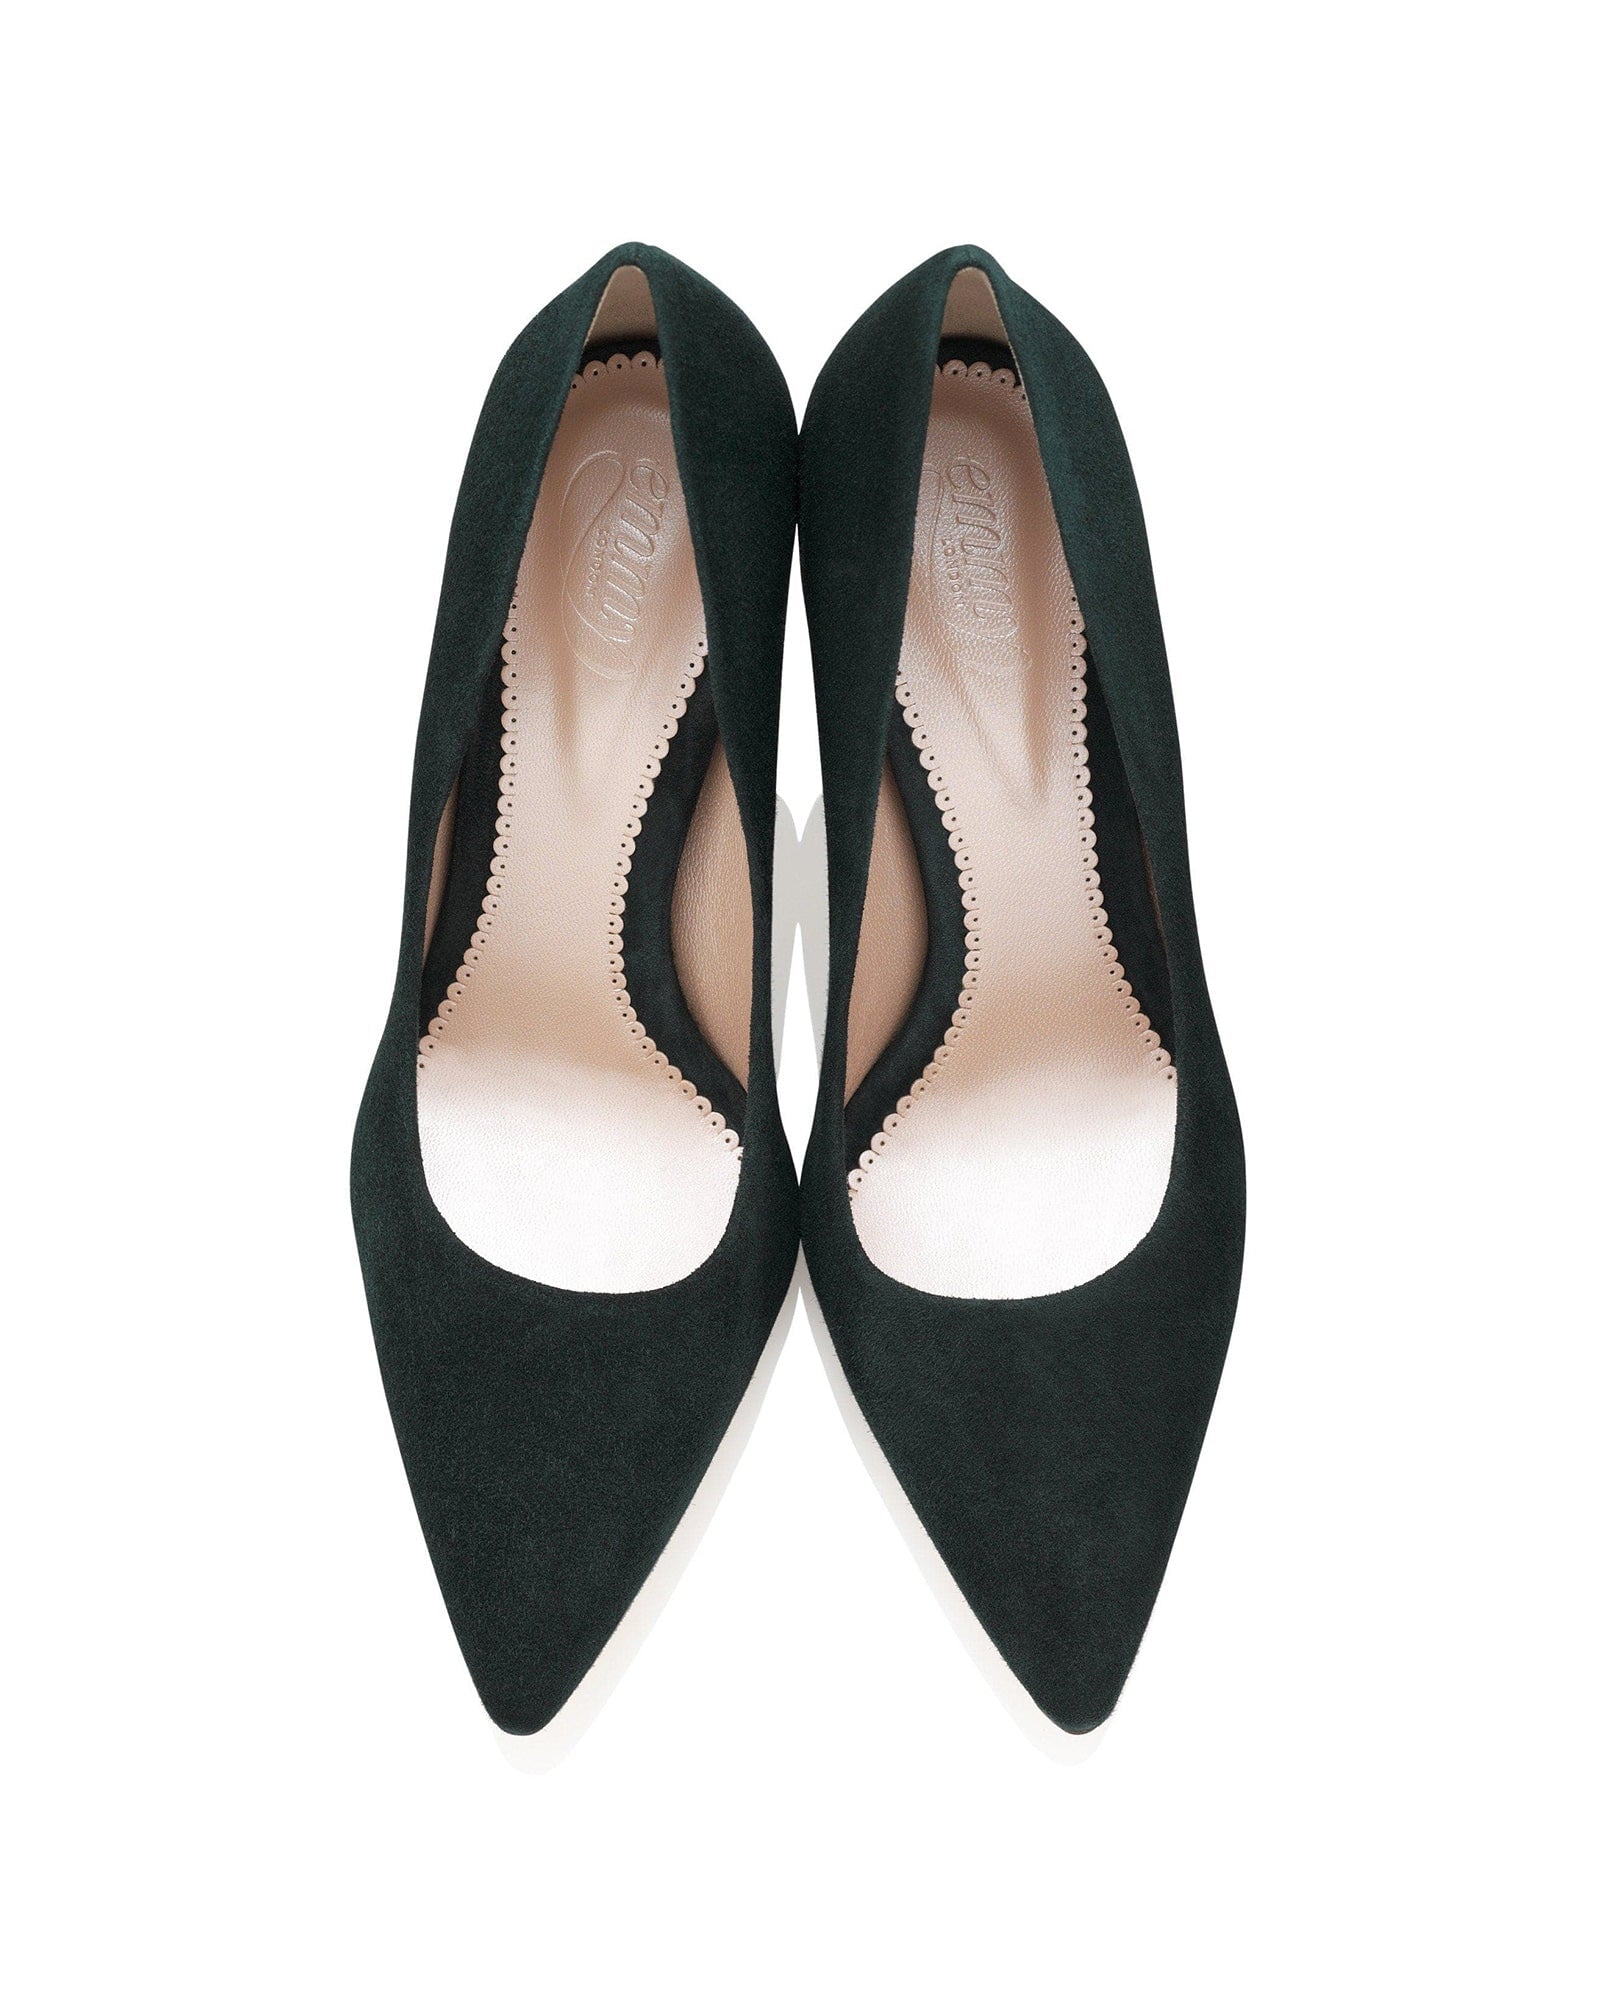 Claudia Greenery Fashion Shoe Dark Green Court Shoe  image